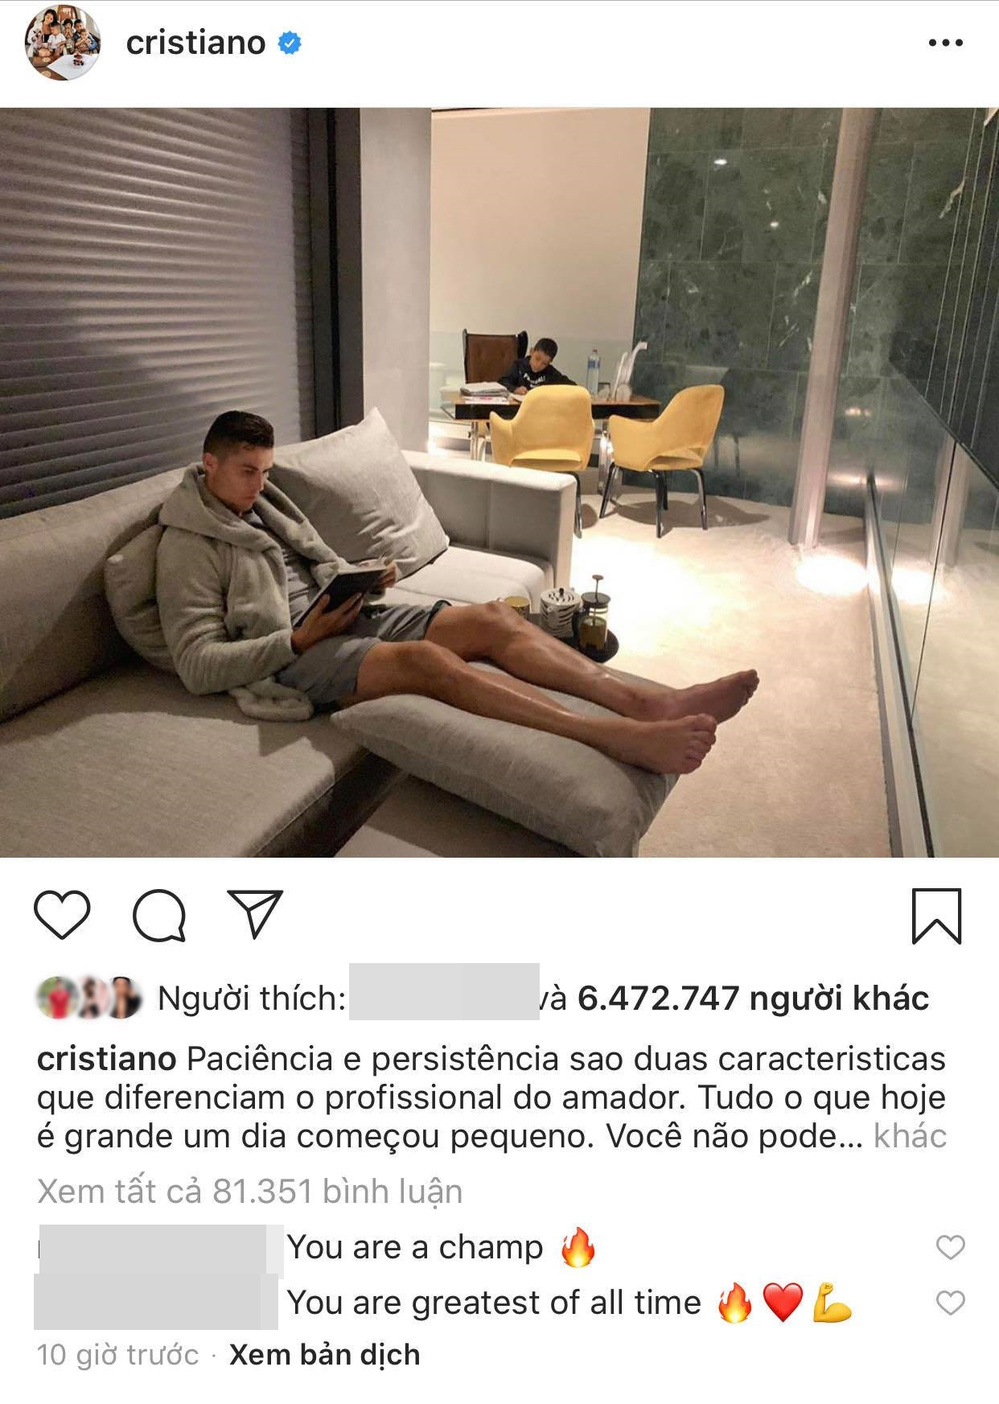  
C.Ronaldo ngồi nhà up ảnh sầu bi